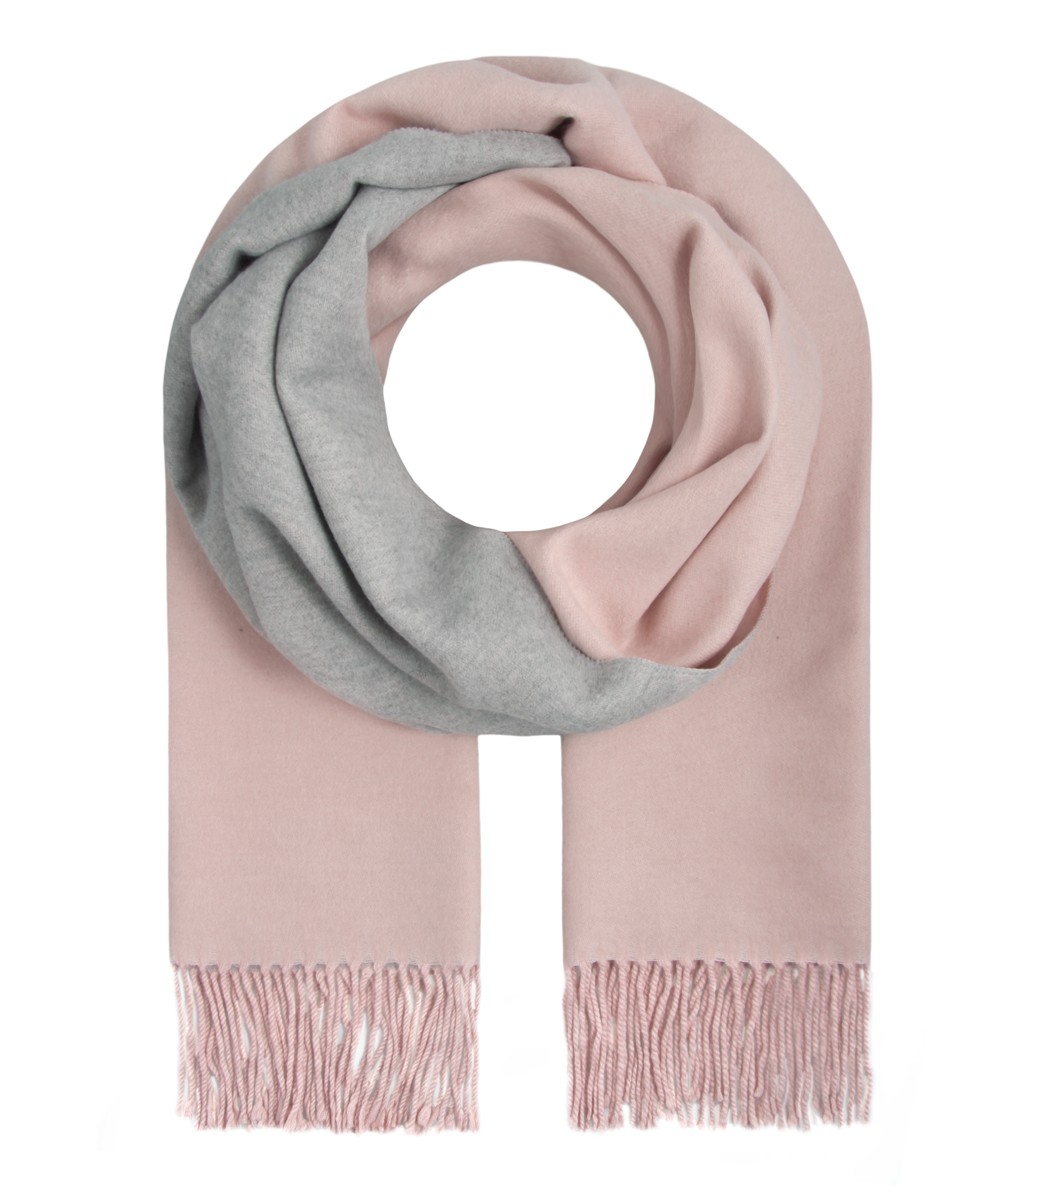 Mode & Beauty Accessoires & Schmuck Halstuch Schal rosa mit Farbverlauf Fransen 180 x 68 cm 